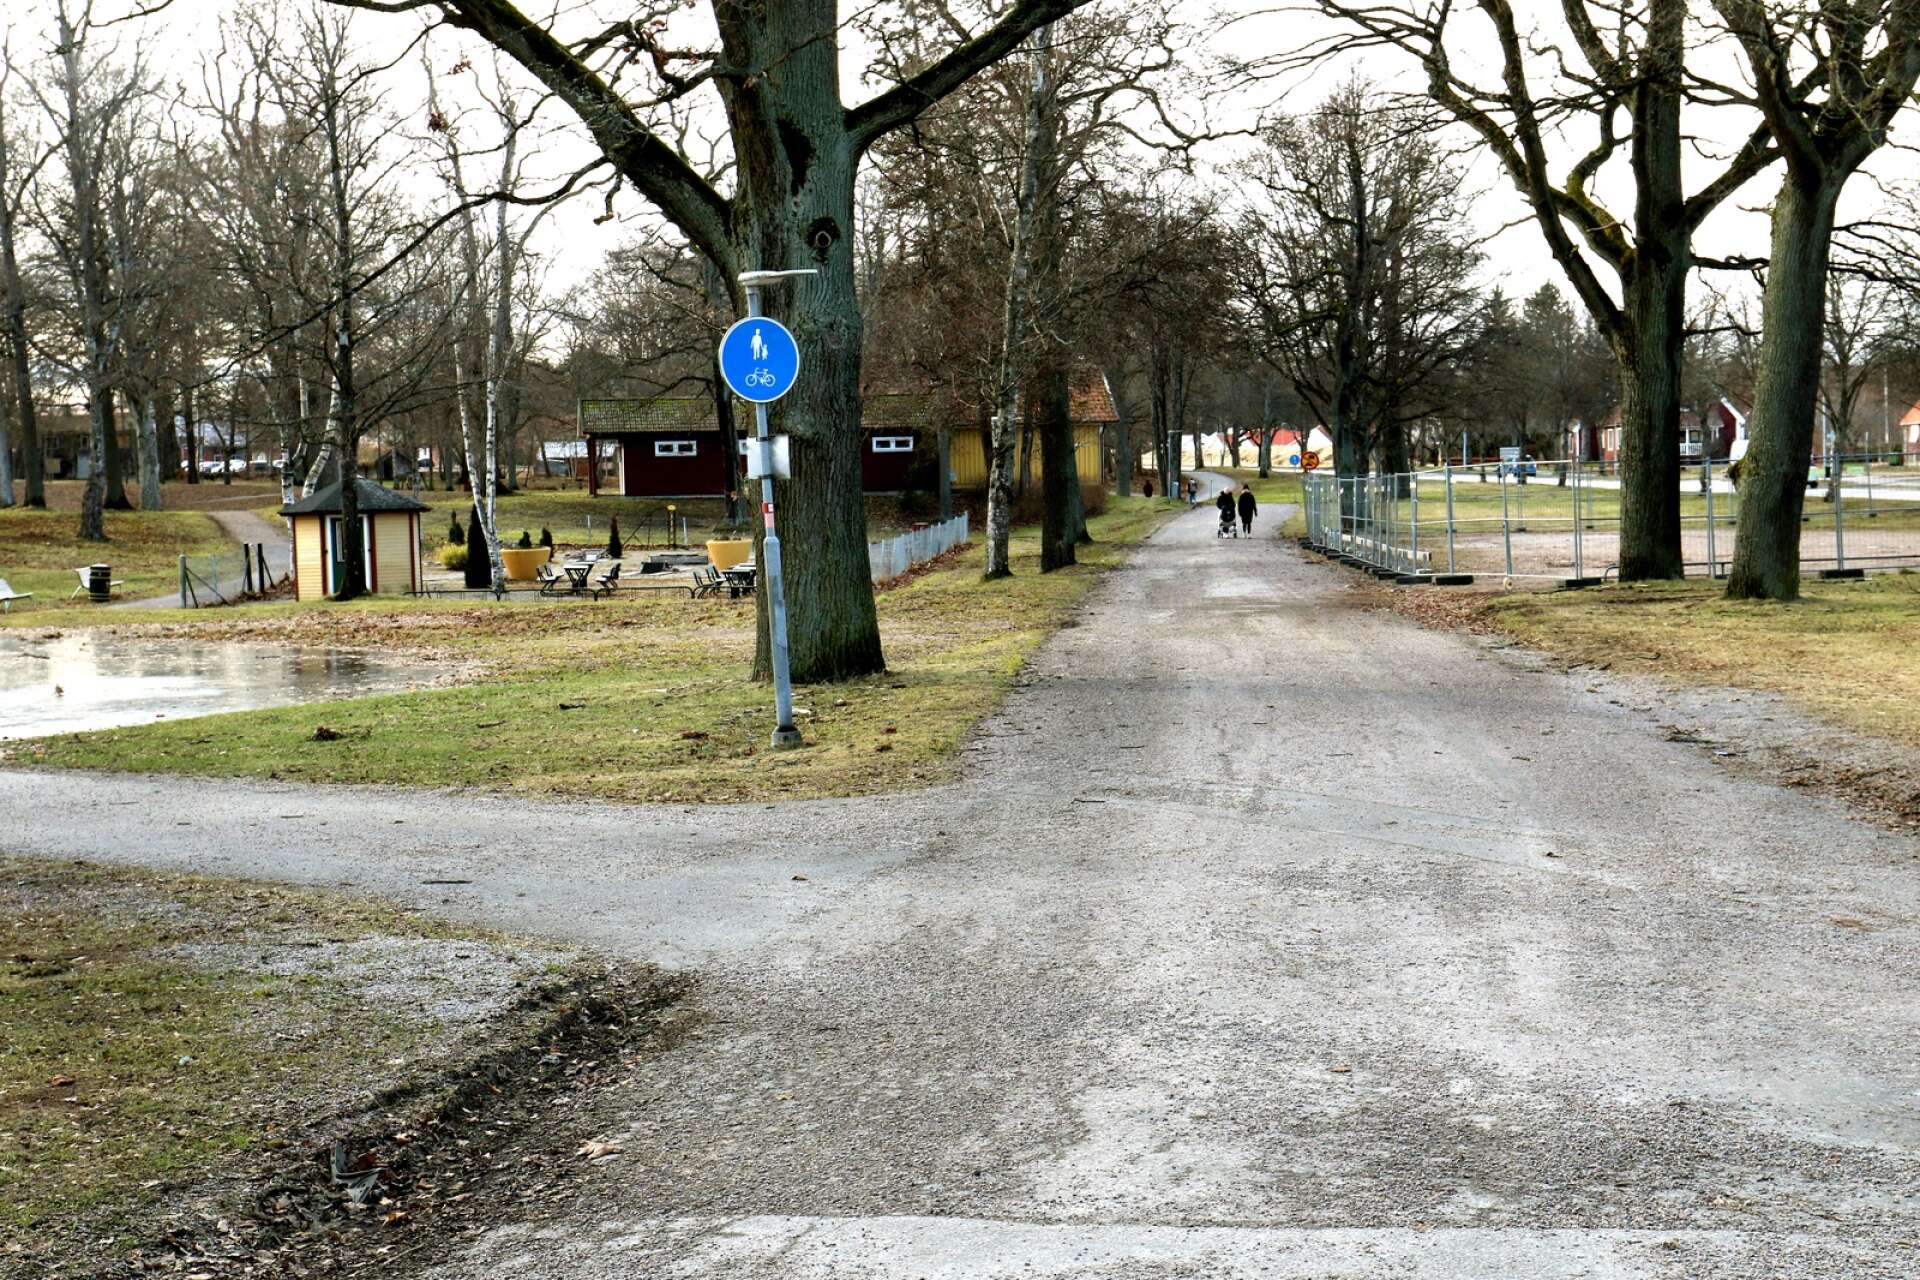 Även om det skymtar ännu en blå skylt som står för gång- och cykelbana lite längre i riktning rakt fram, är det enligt kommunens nya karta meningen att cyklisterna ska svänga in på vägen till vänster.